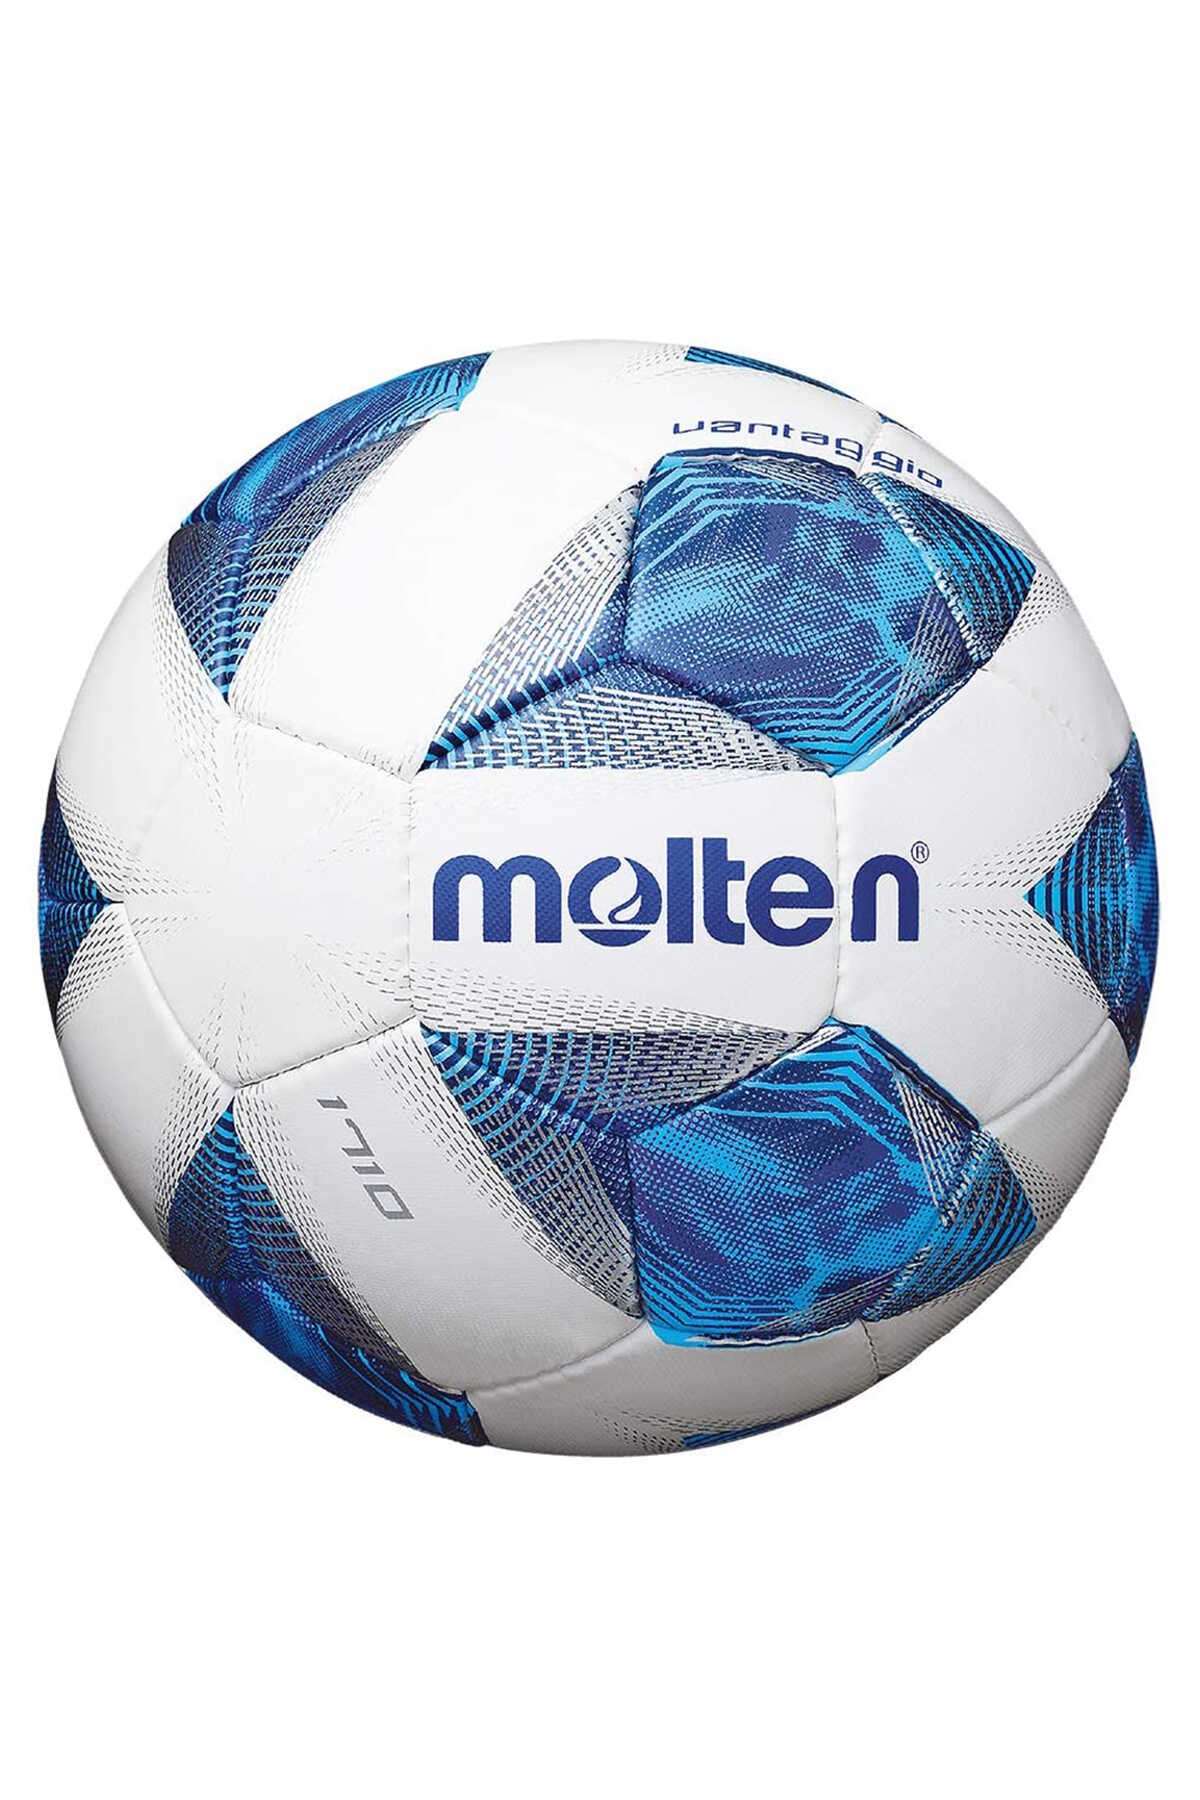 Molten - Molten 4 Numara Futbol Topu Mavi / Beyaz